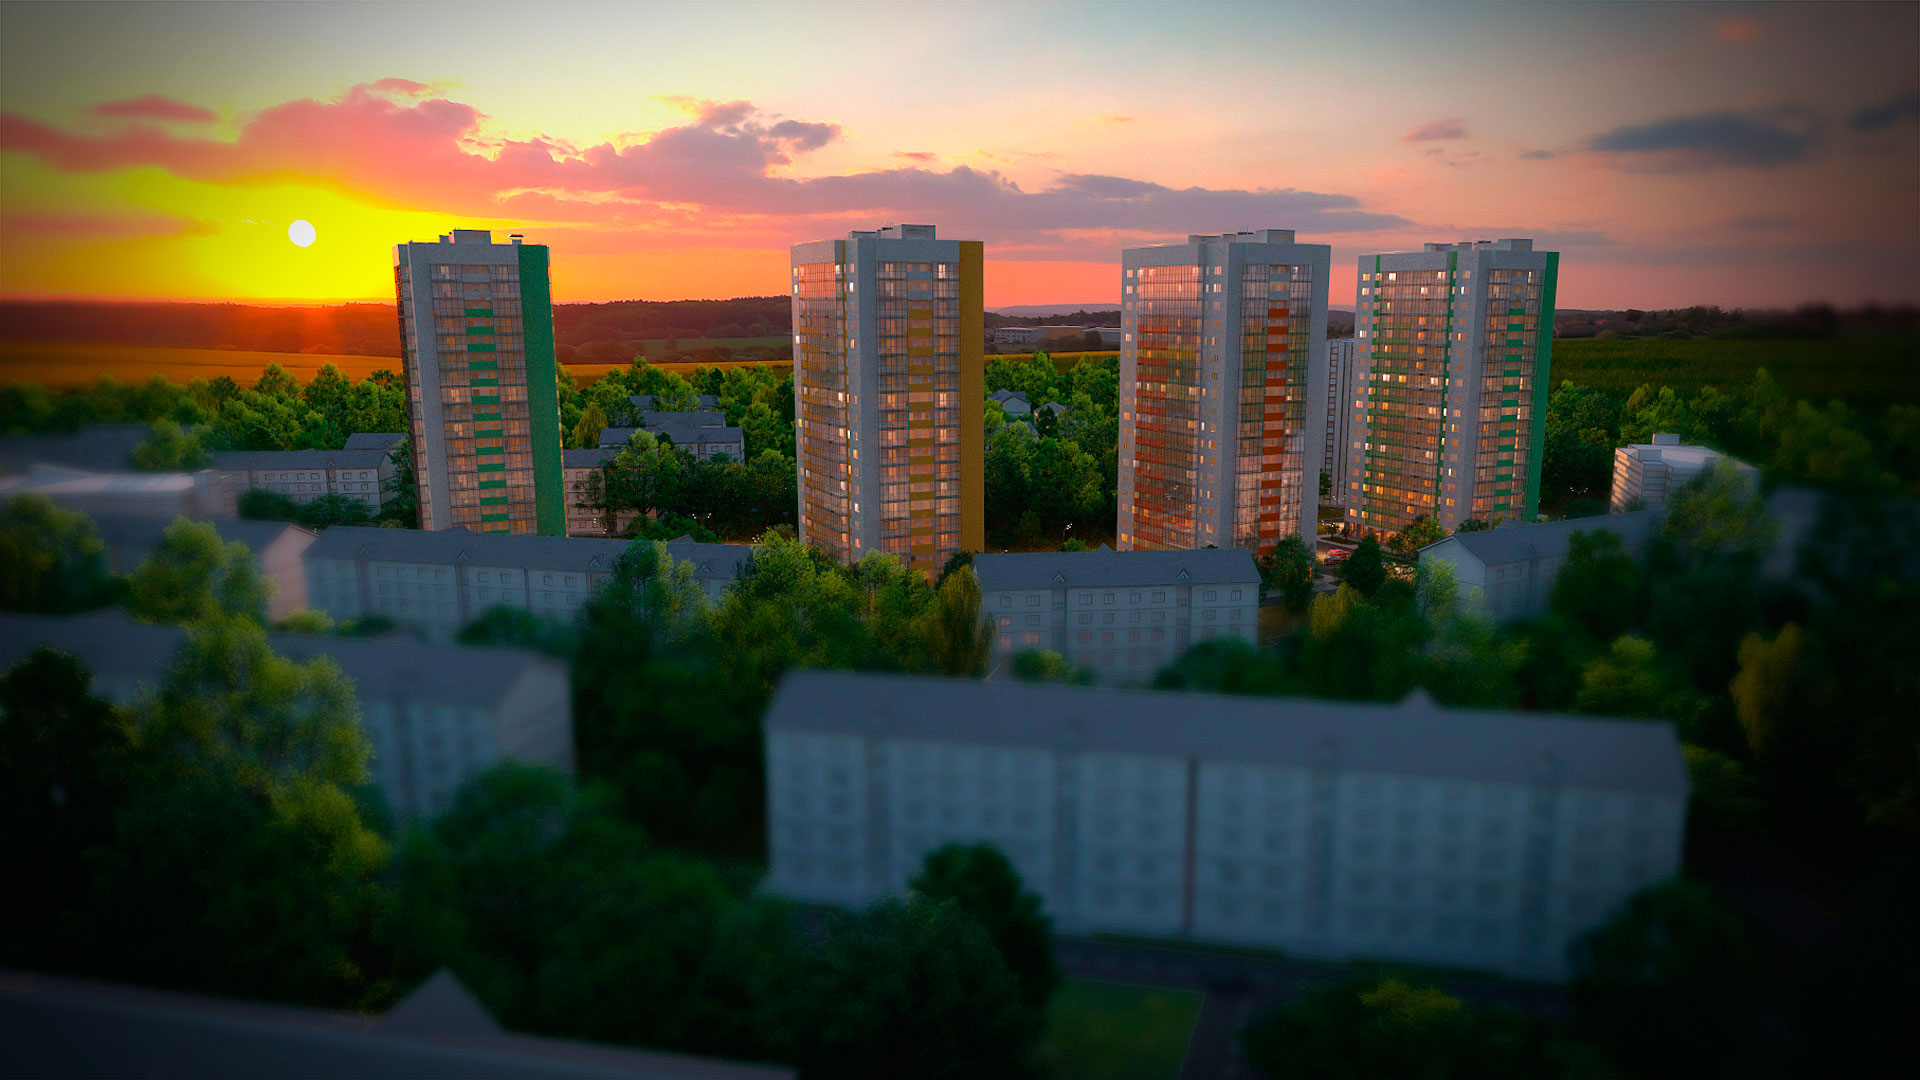 родажа 2кк квартиры в ЖК «Green city»   Представляет из себя комфортабельный жилой комплекс расположенный по адресу... - 6